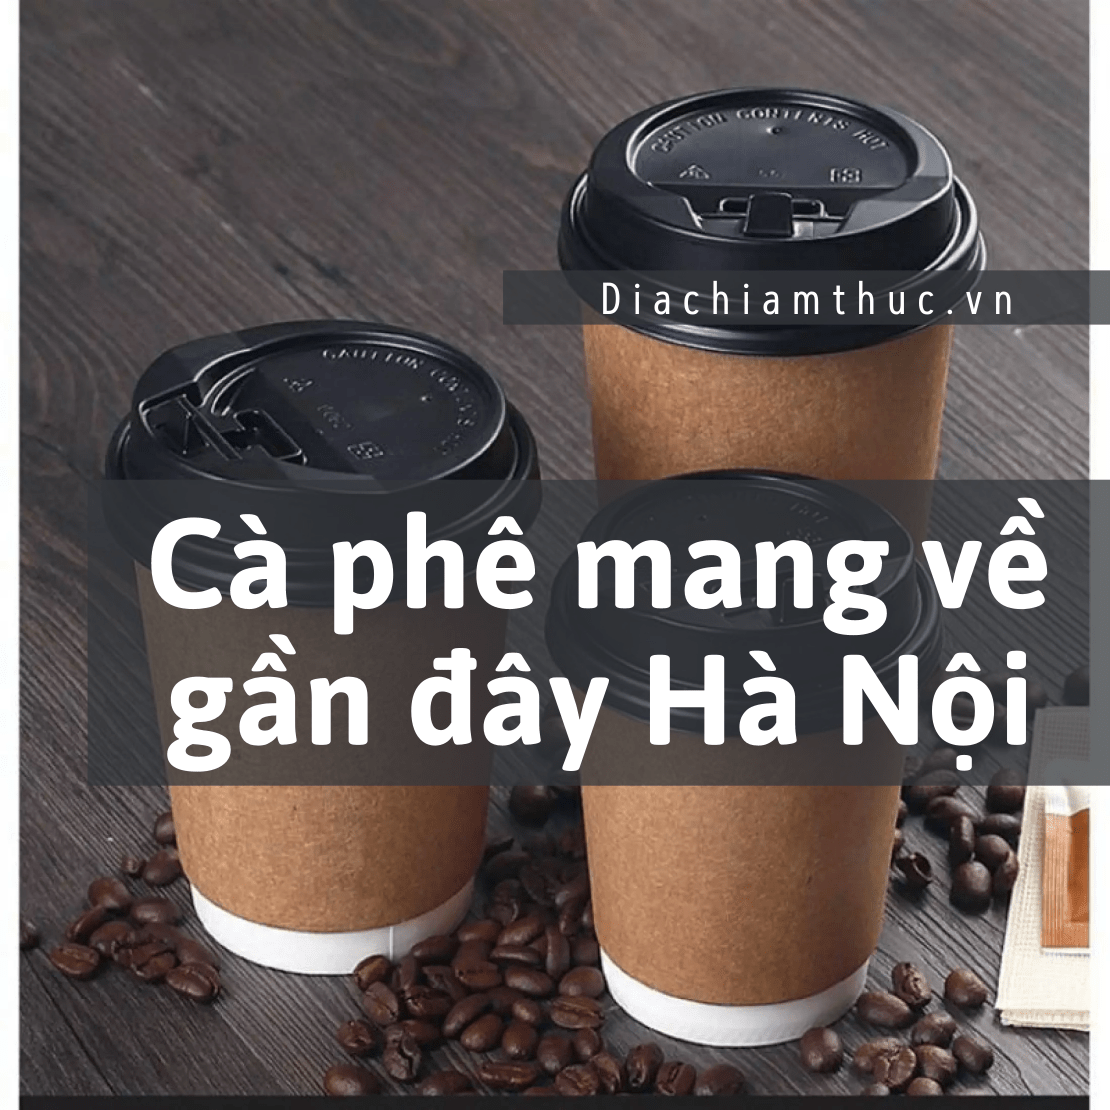 Cà phê mang về gần đây Hà Nội